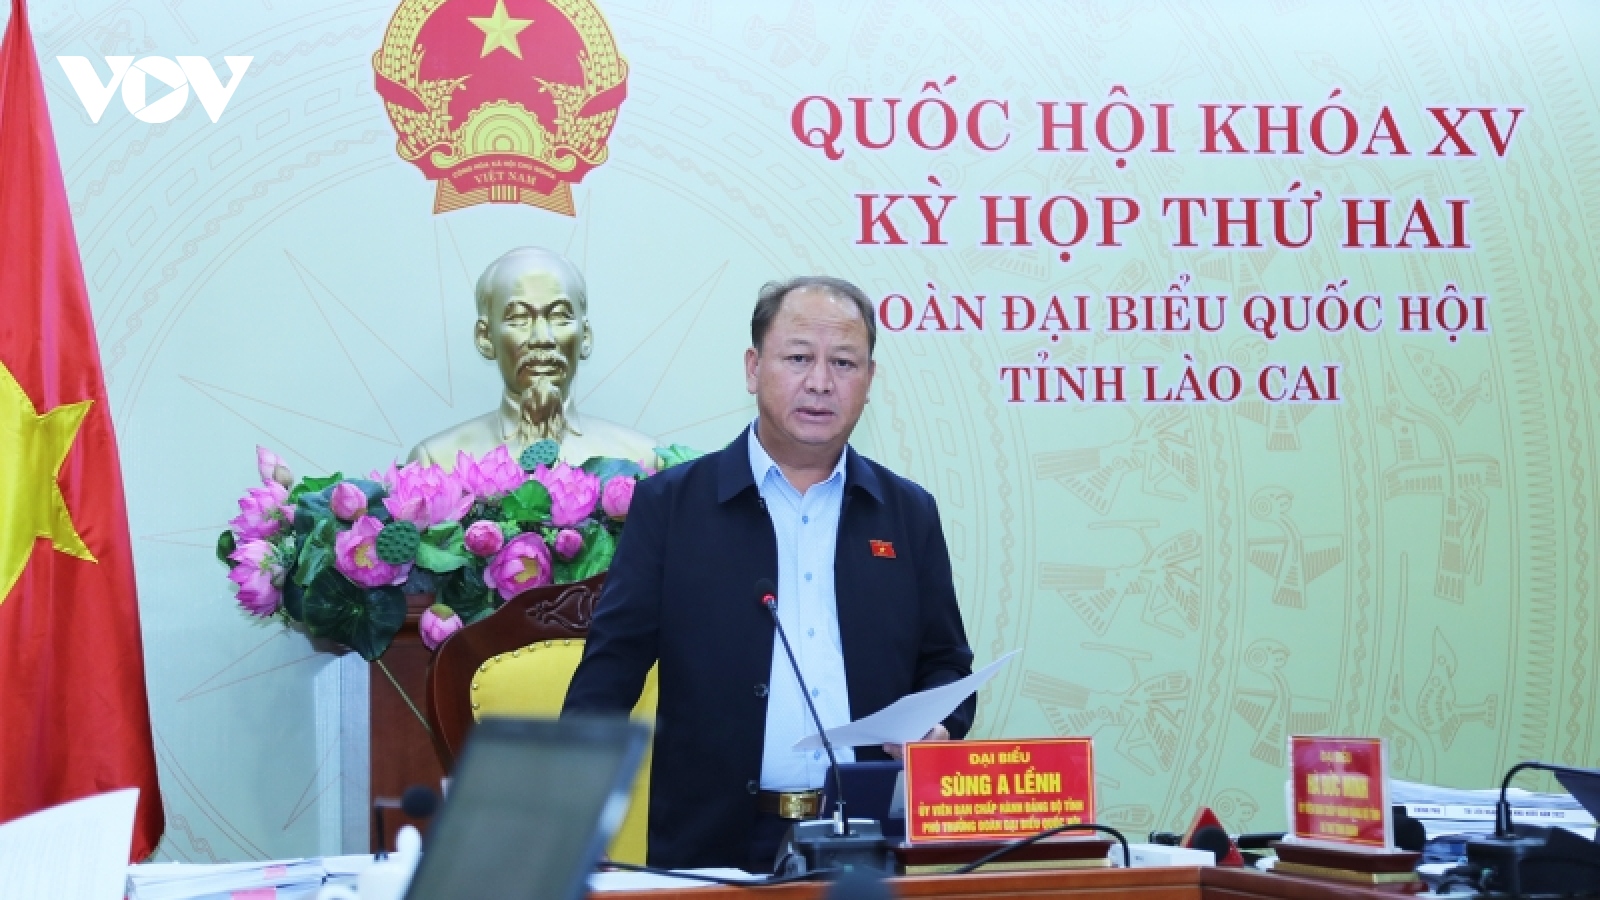 ĐBQH Lào Cai: Cần chính sách đặc thù để Khu du lịch Quốc gia Sa Pa mang tầm quốc tế